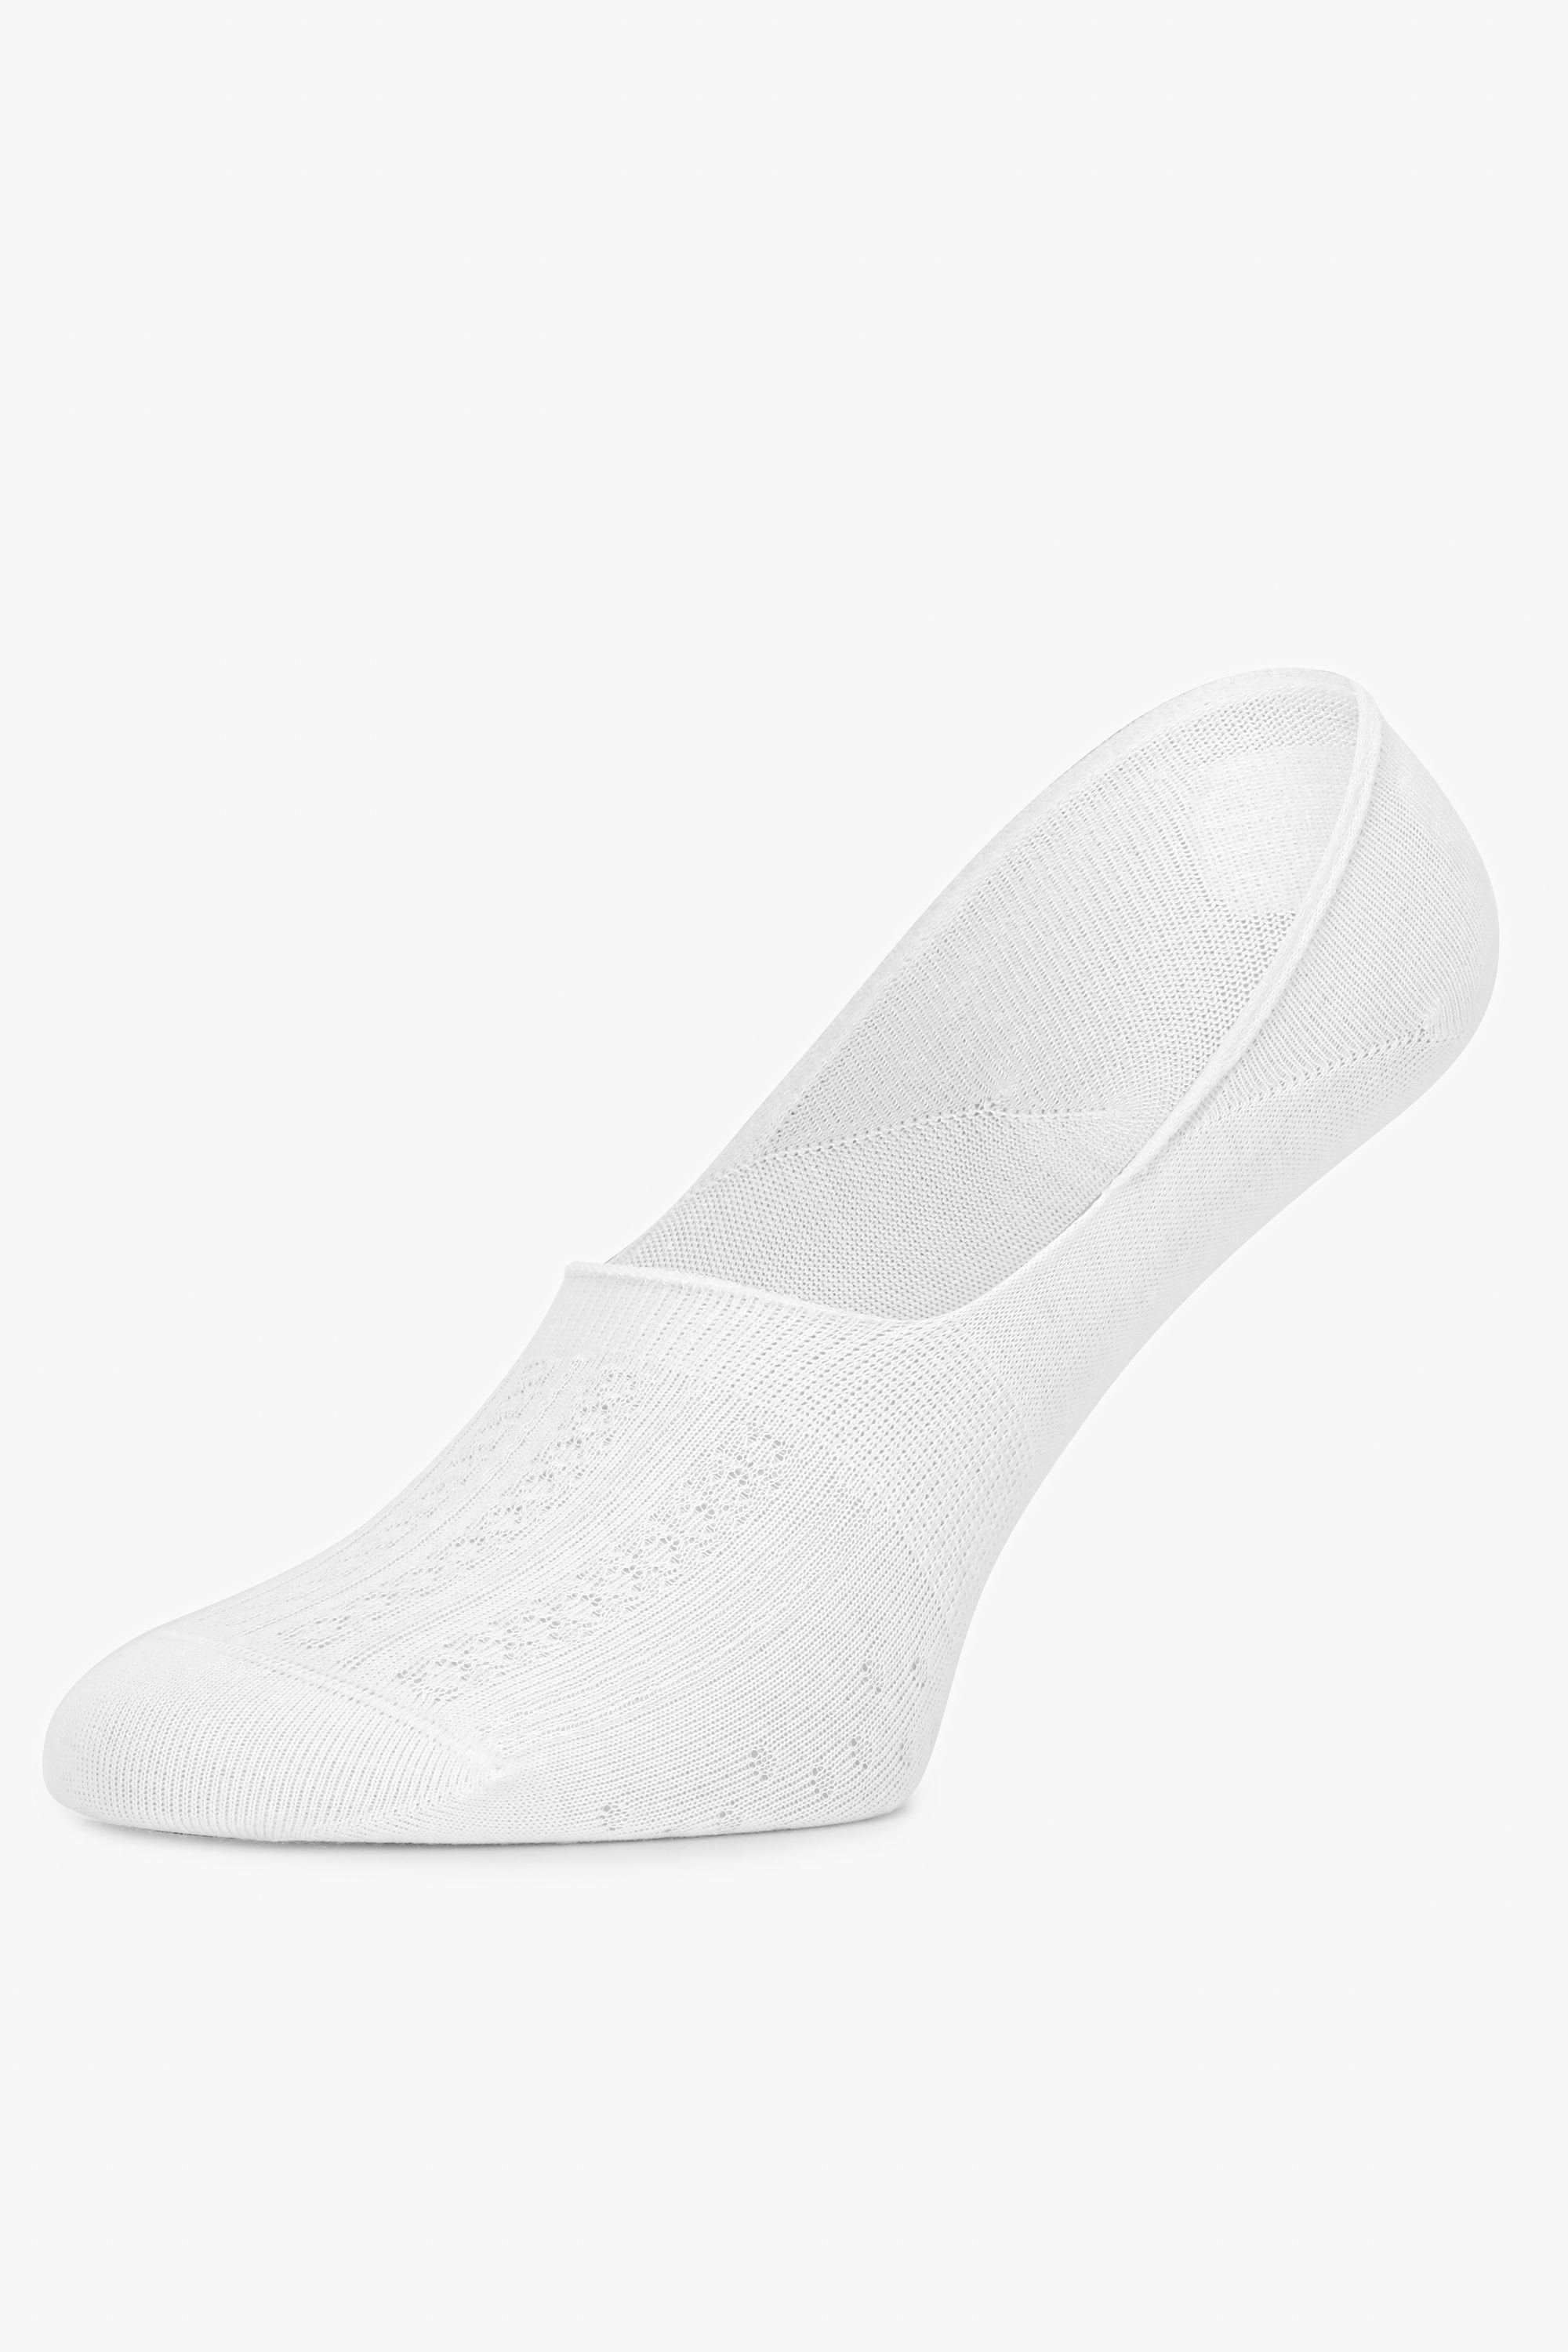 Weiß Socken MSGI034 Socken Damen Style Sneaker Merry